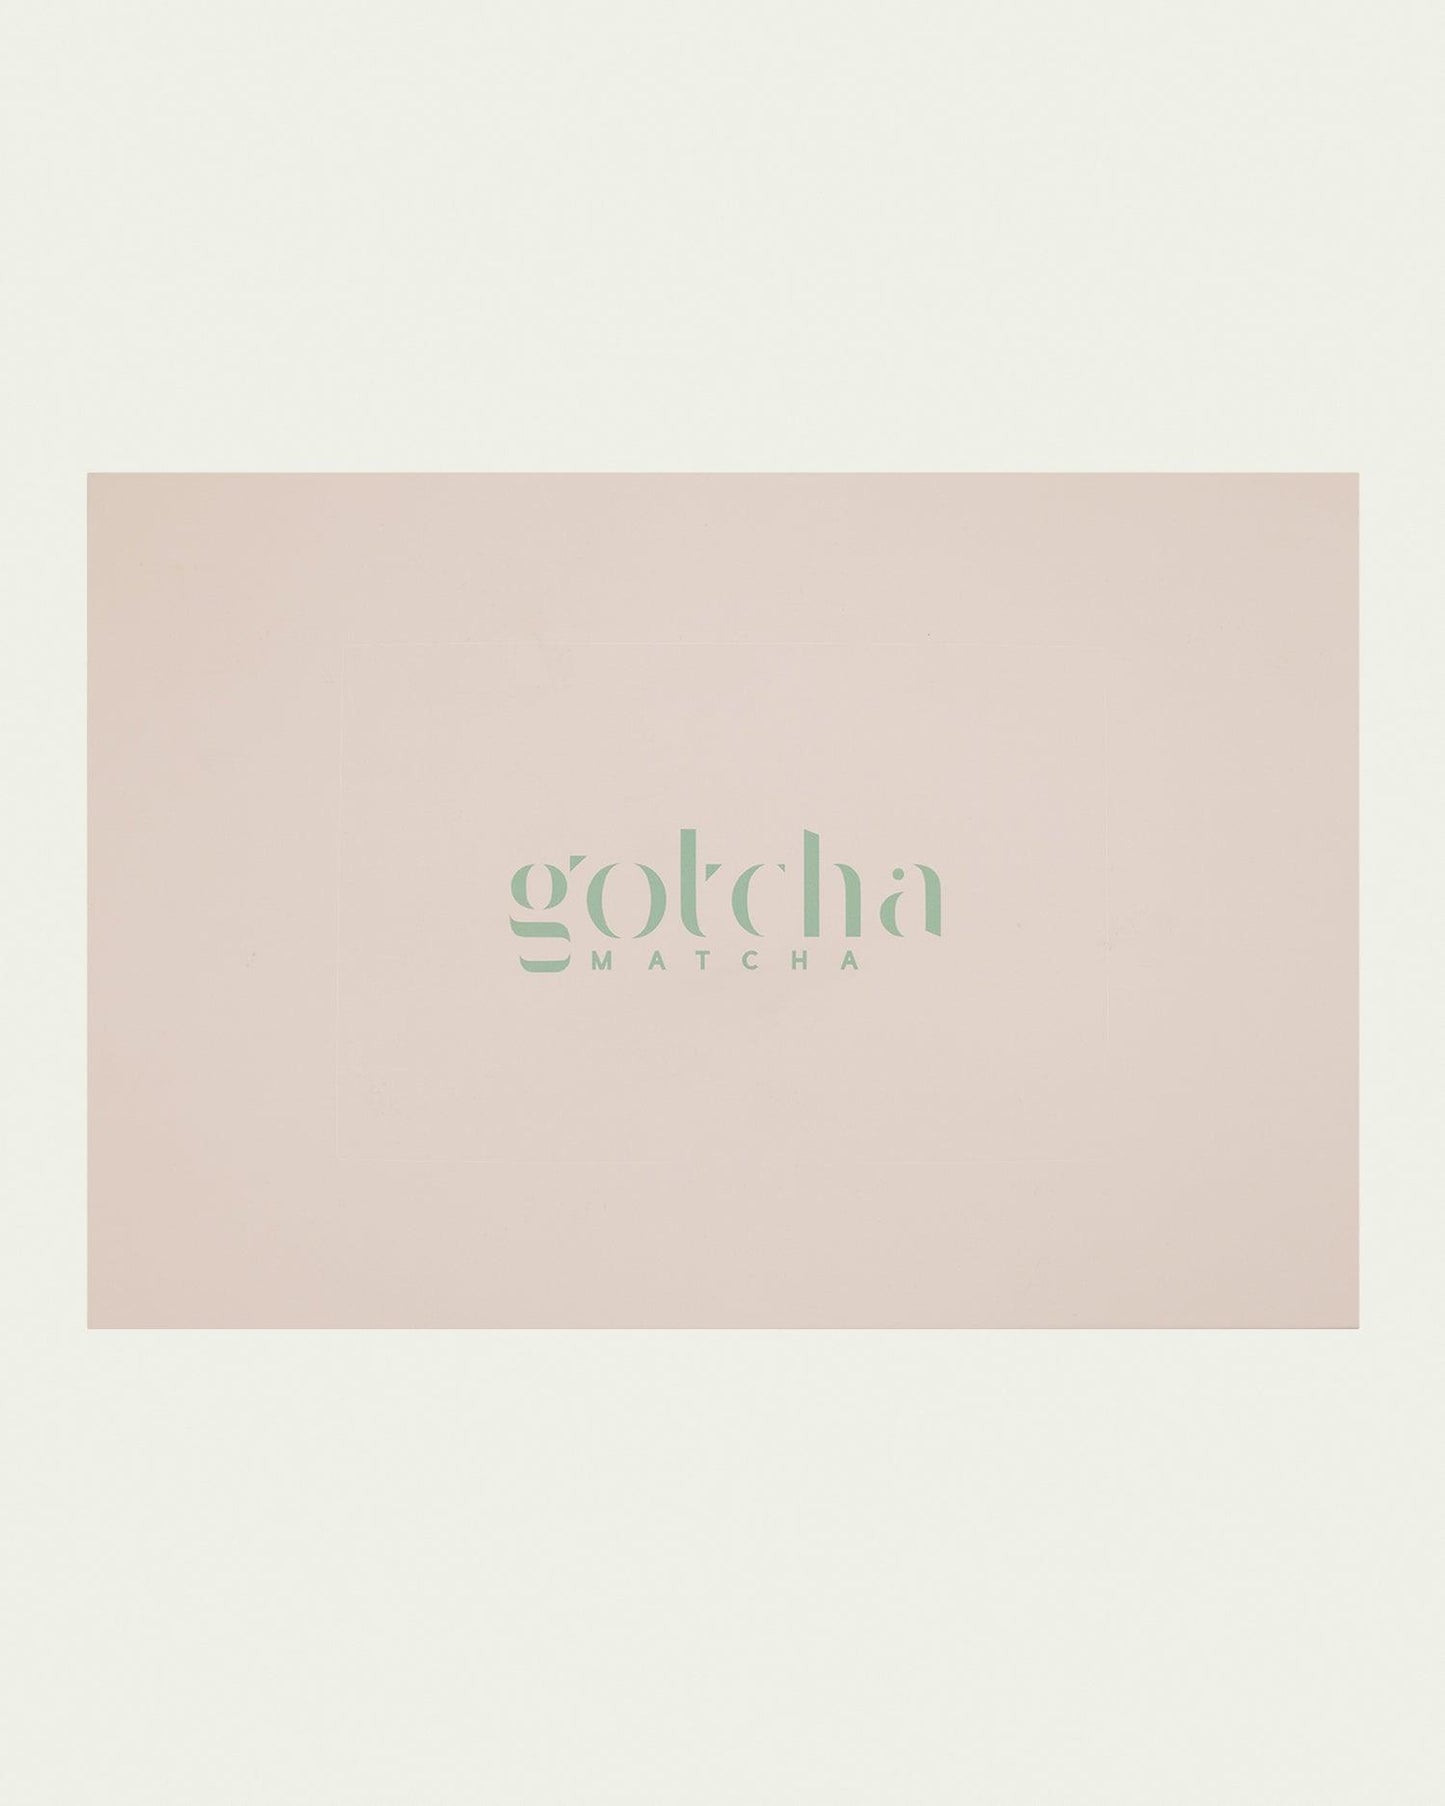 Starter Set Gotcha Matcha - Wylde Grey